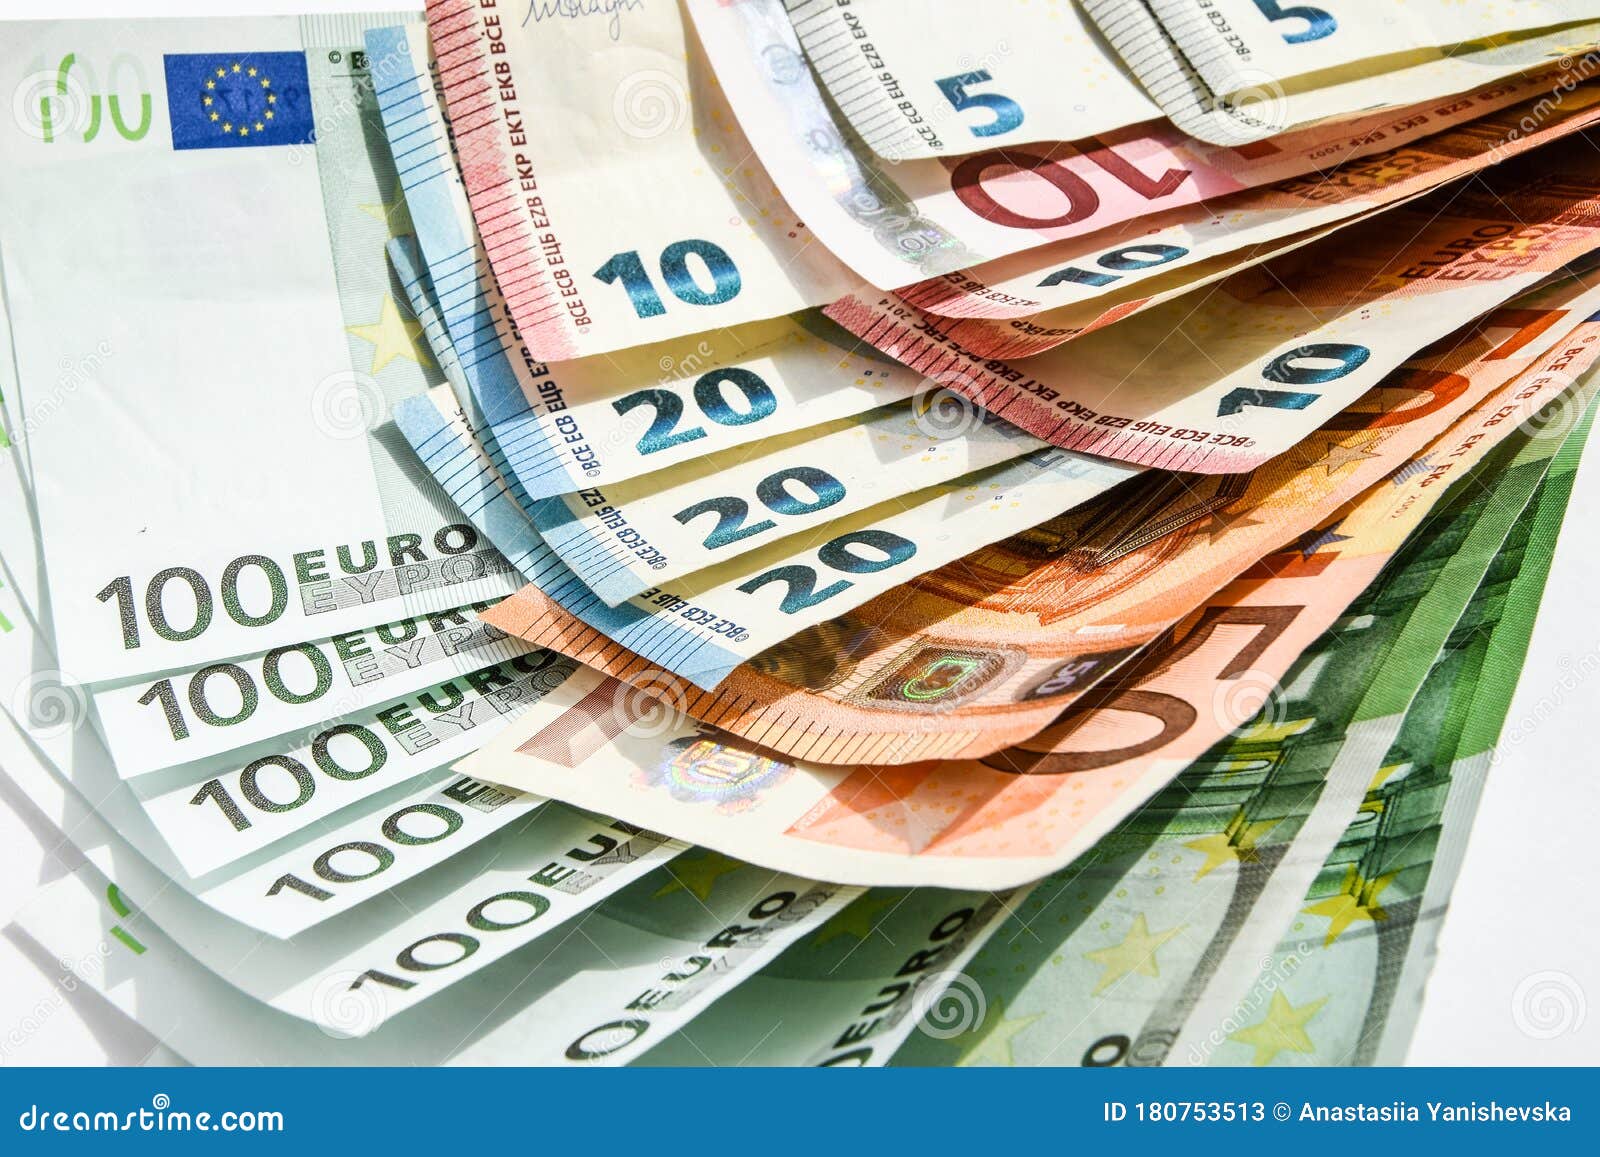 L'euro Est La Monnaie De L'euro Fond D'argent De L'Union Européenne De  Plusieurs Billets En Valeur Différente Image stock - Image du côté, compte:  180753513